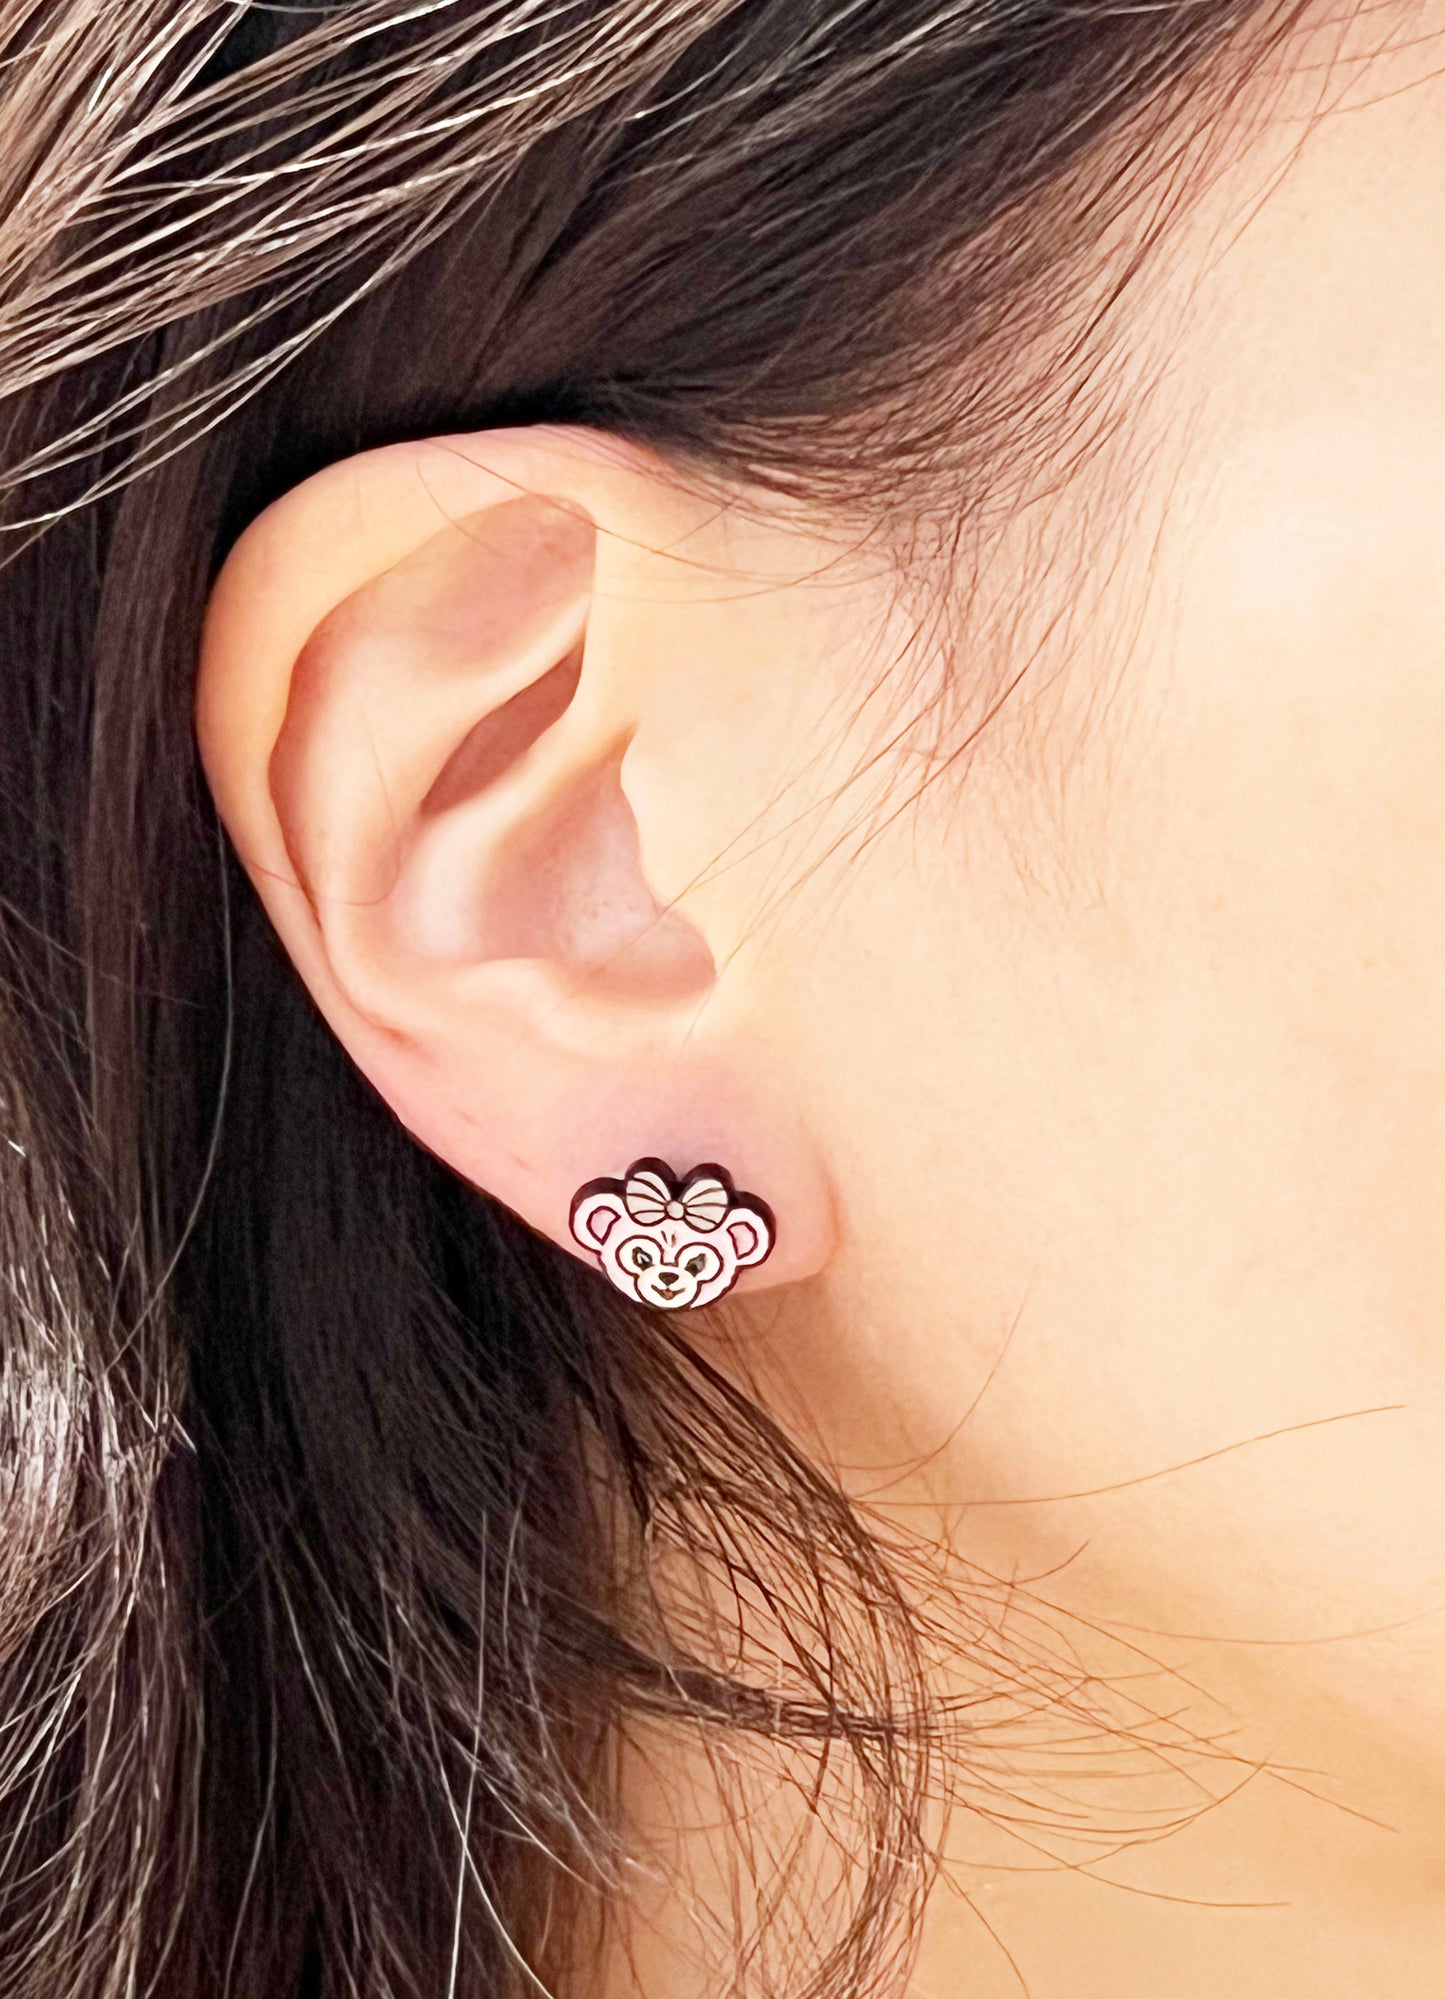 Disney-licensed Duffy the Disney Bear stud earrings, cute earrings